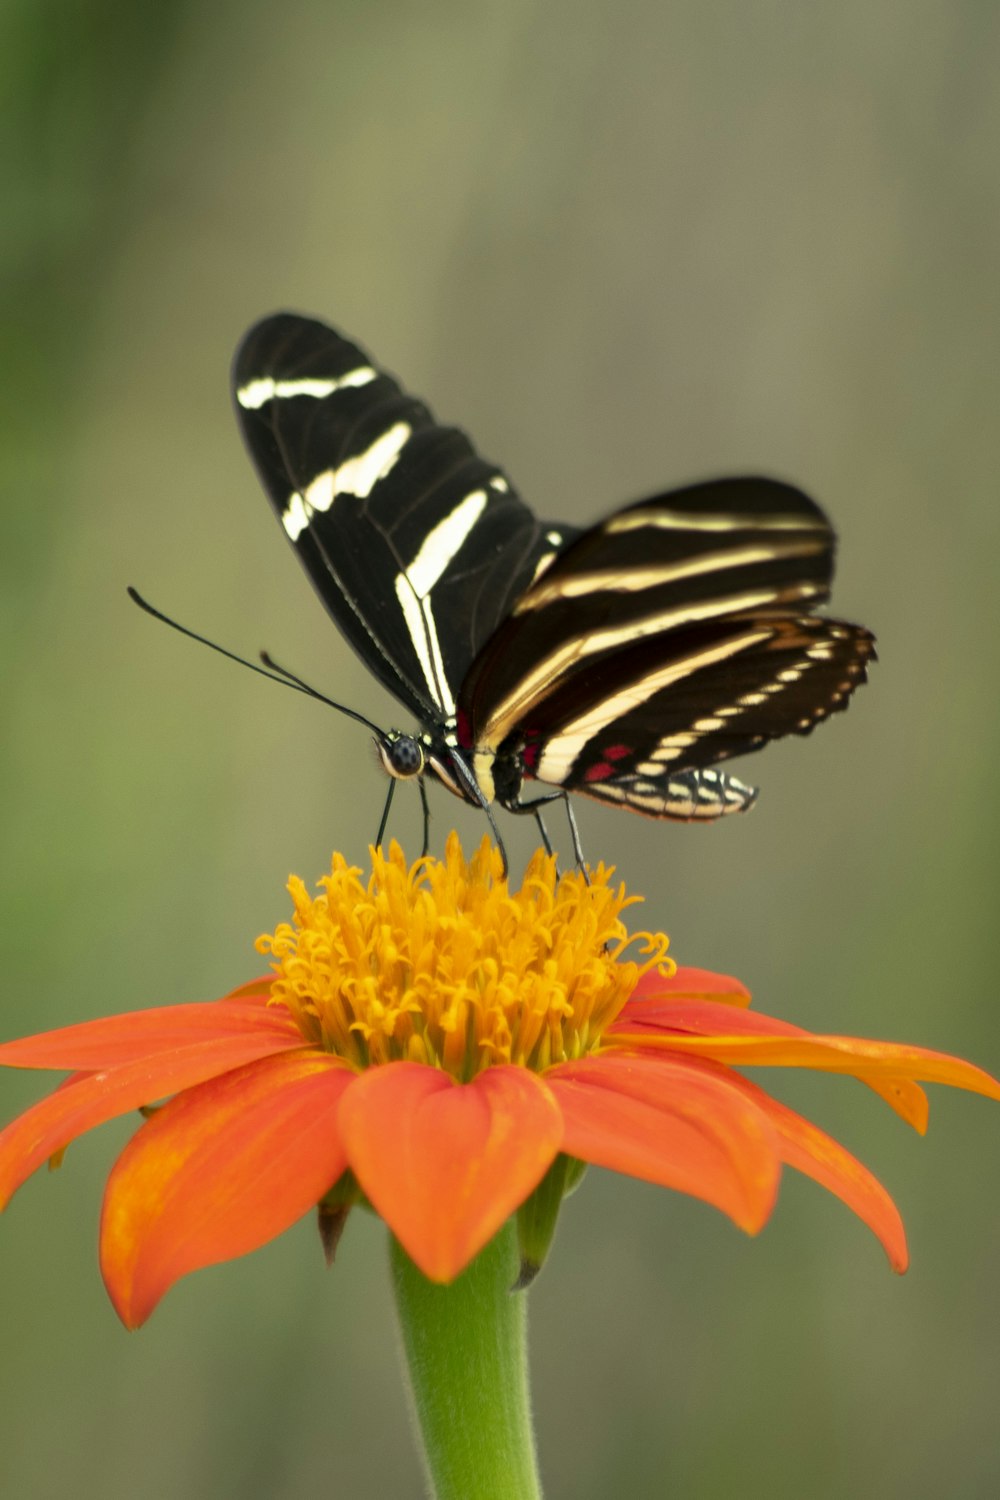 オレンジ色の花に描かれた黒い蝶のセレクティブフォーカス写真